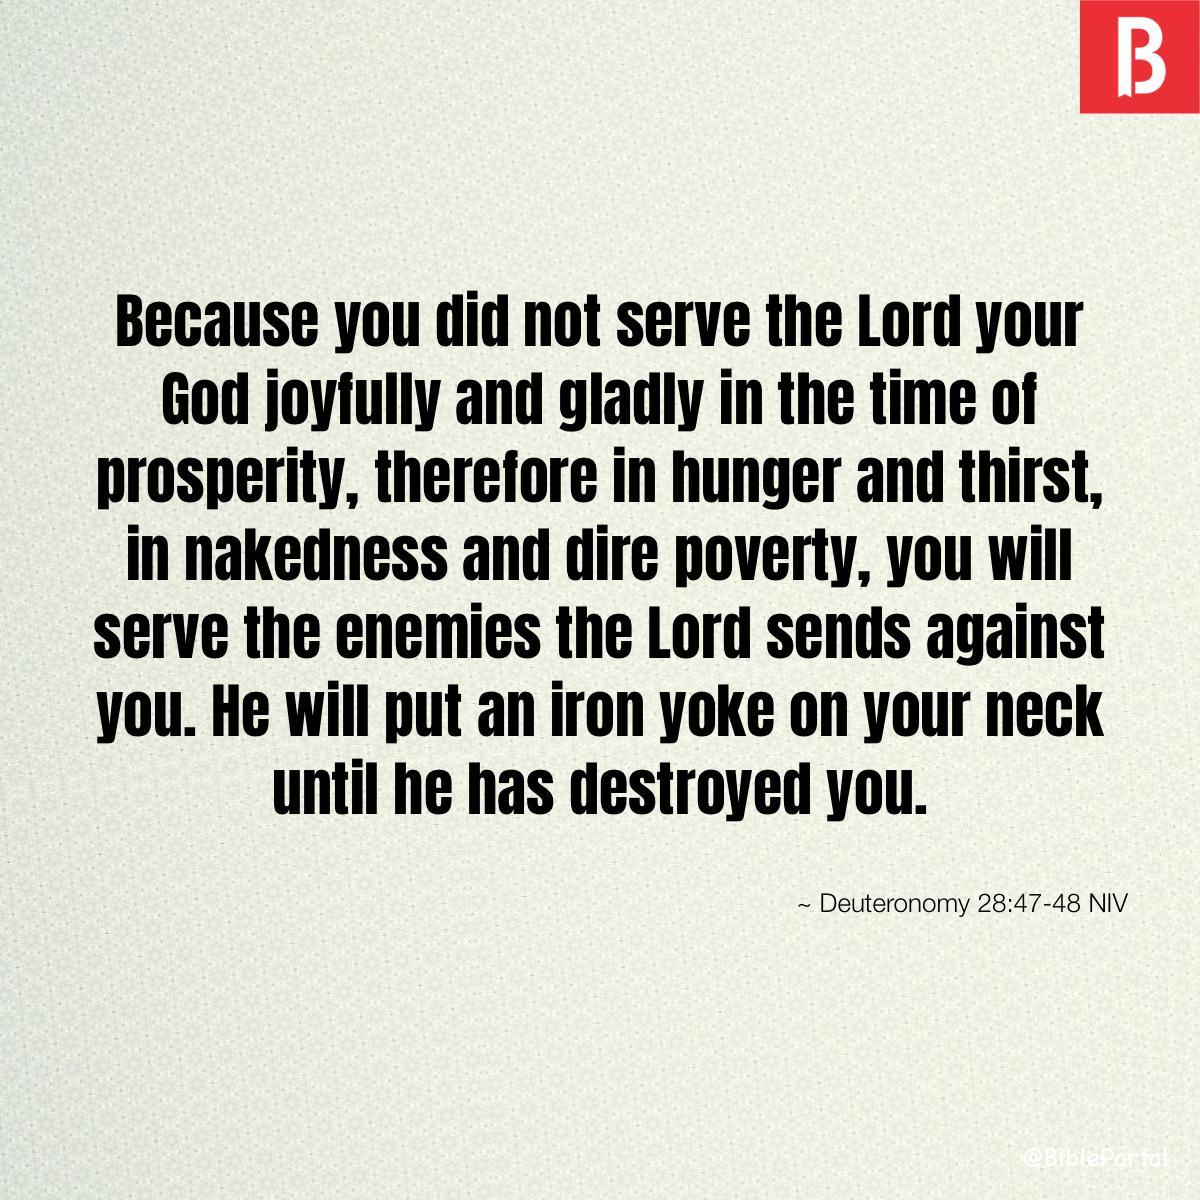 Deuteronomy 28:47-48 NIV